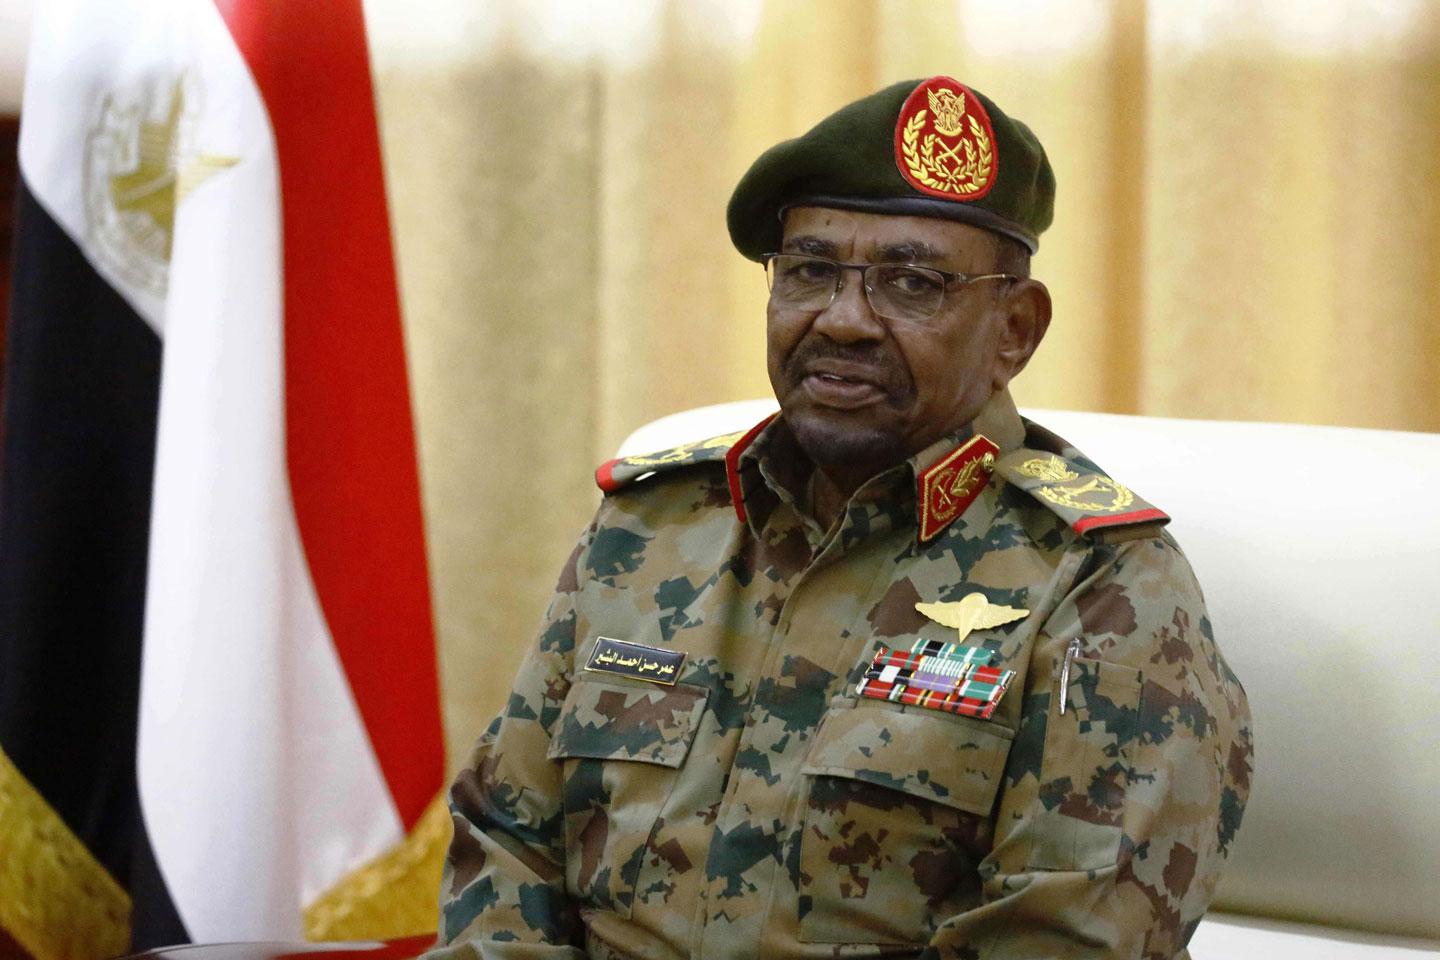 الرئيس السوداني عمر البشير القادم للسلطة بانقلاب عسكري يخشى رحيله بانقلاب عسكري